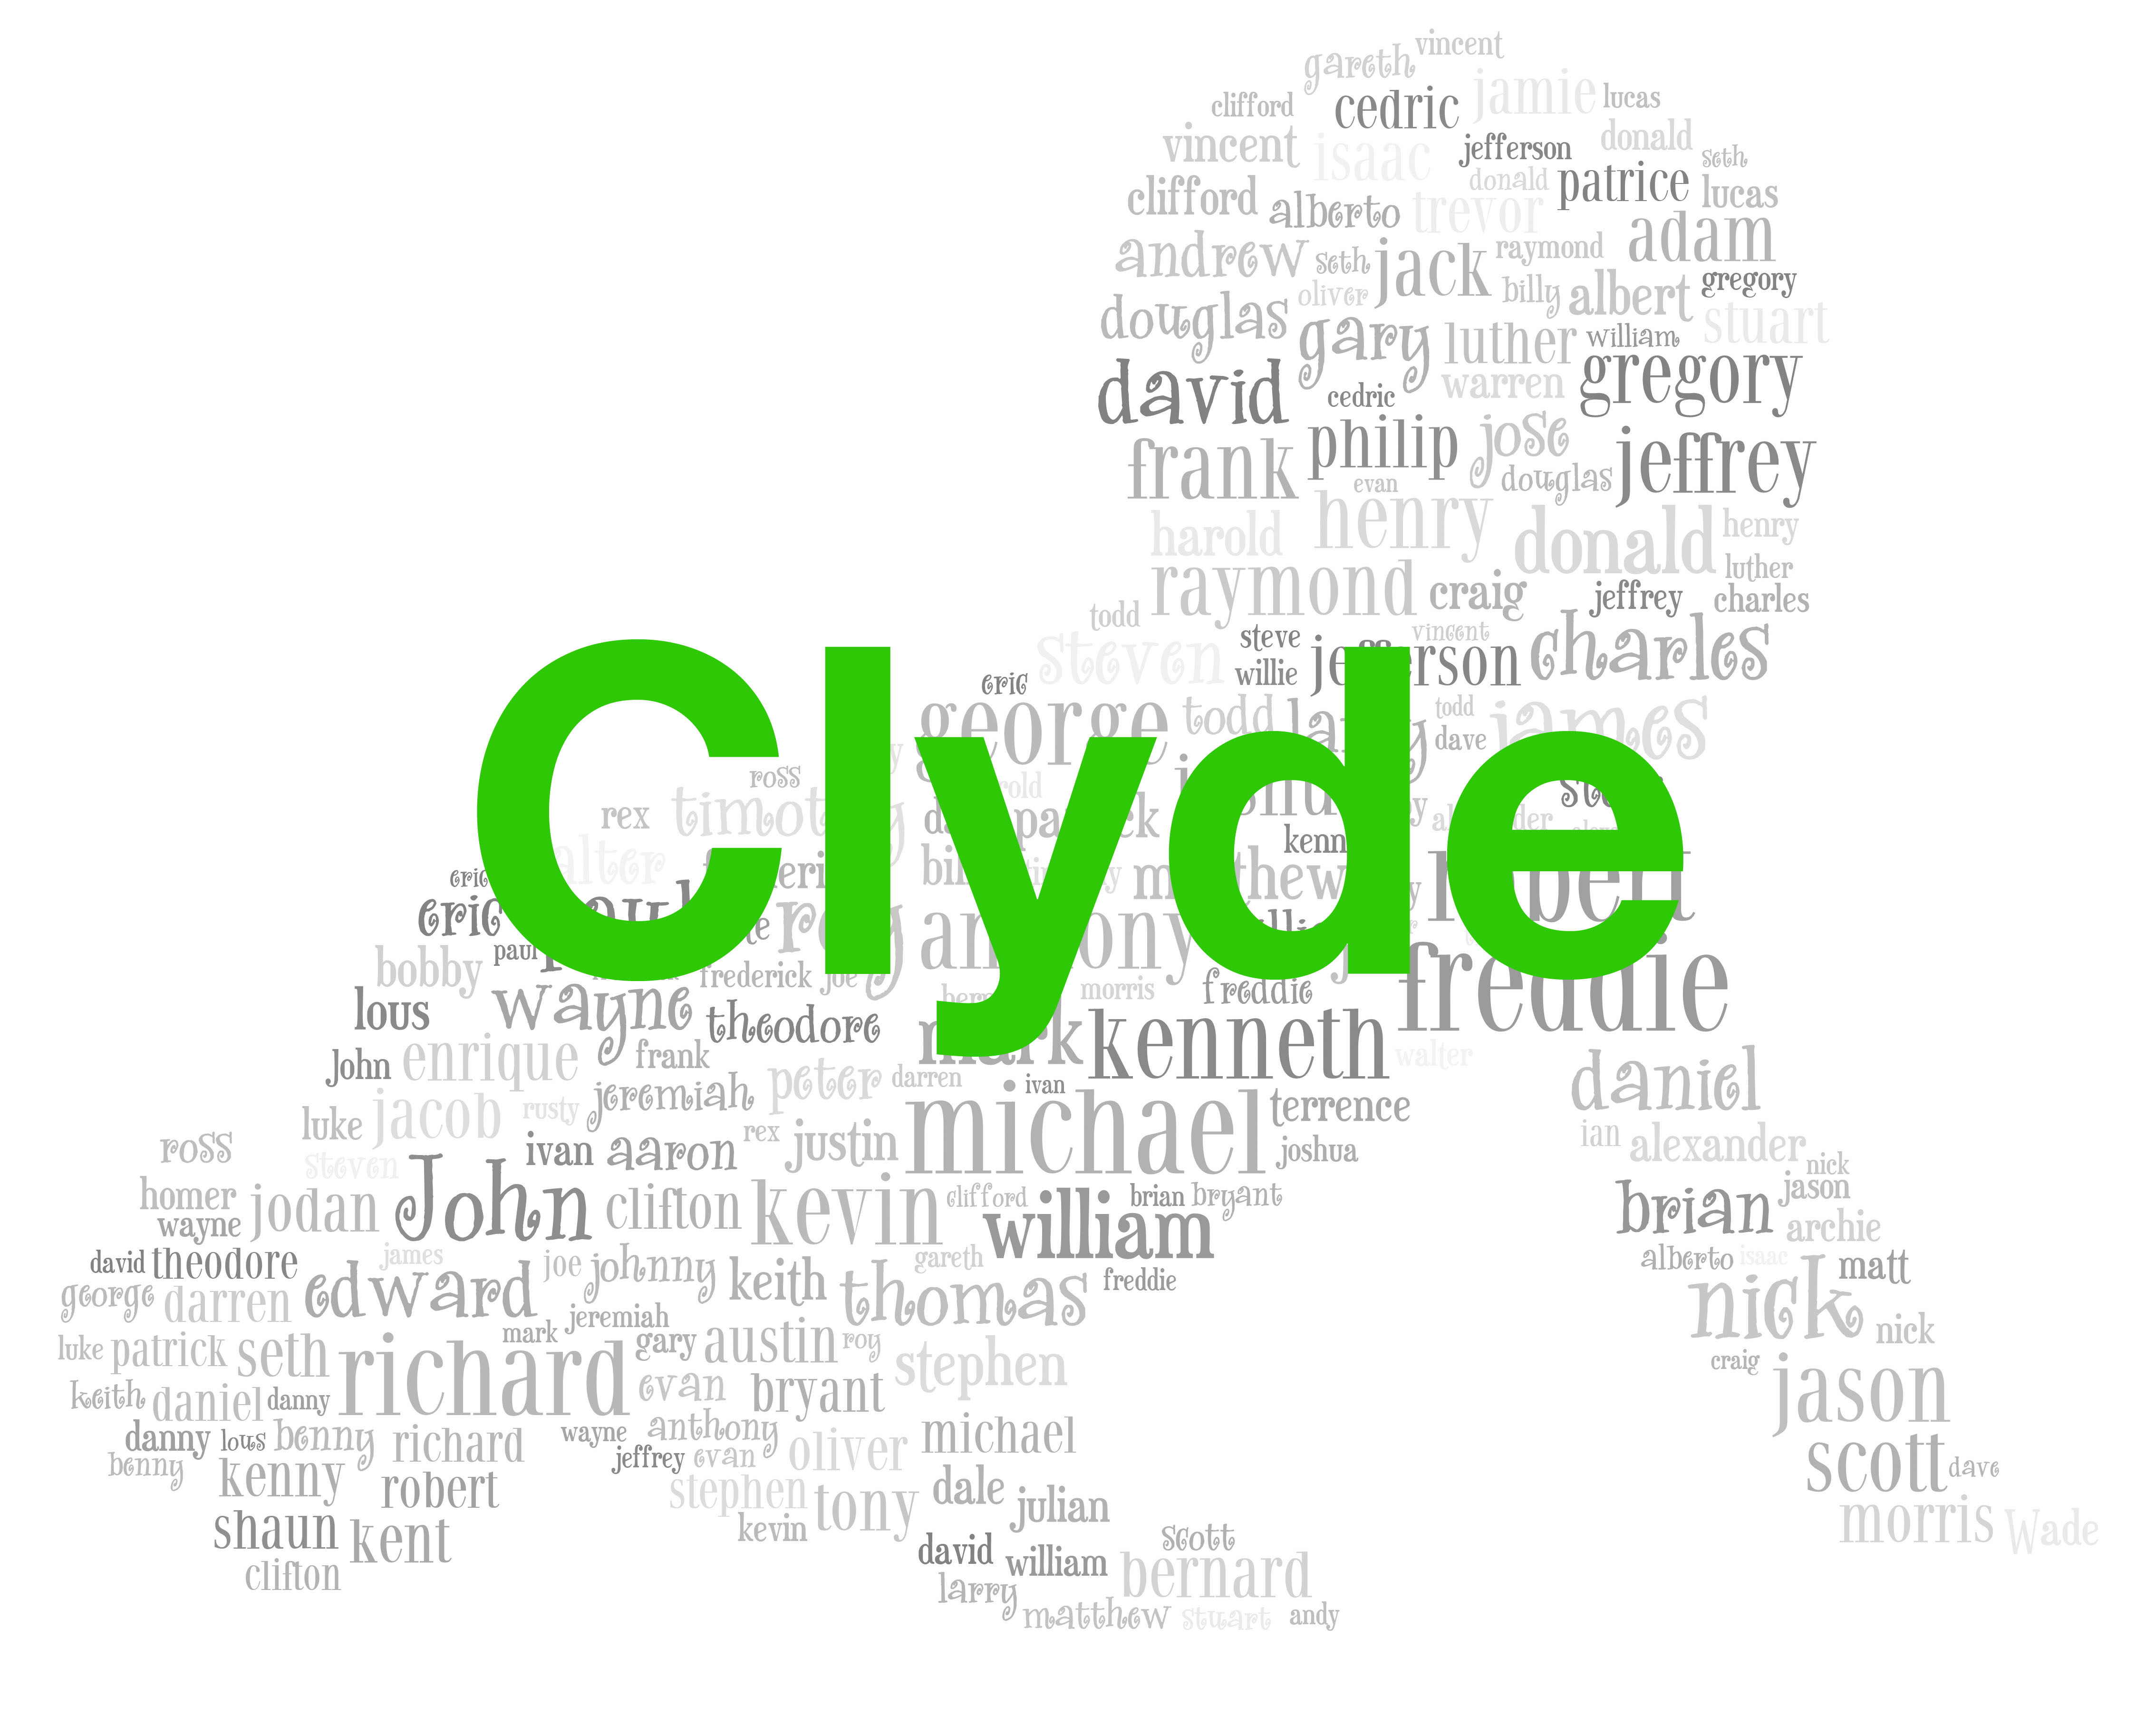 Boys: Clyde